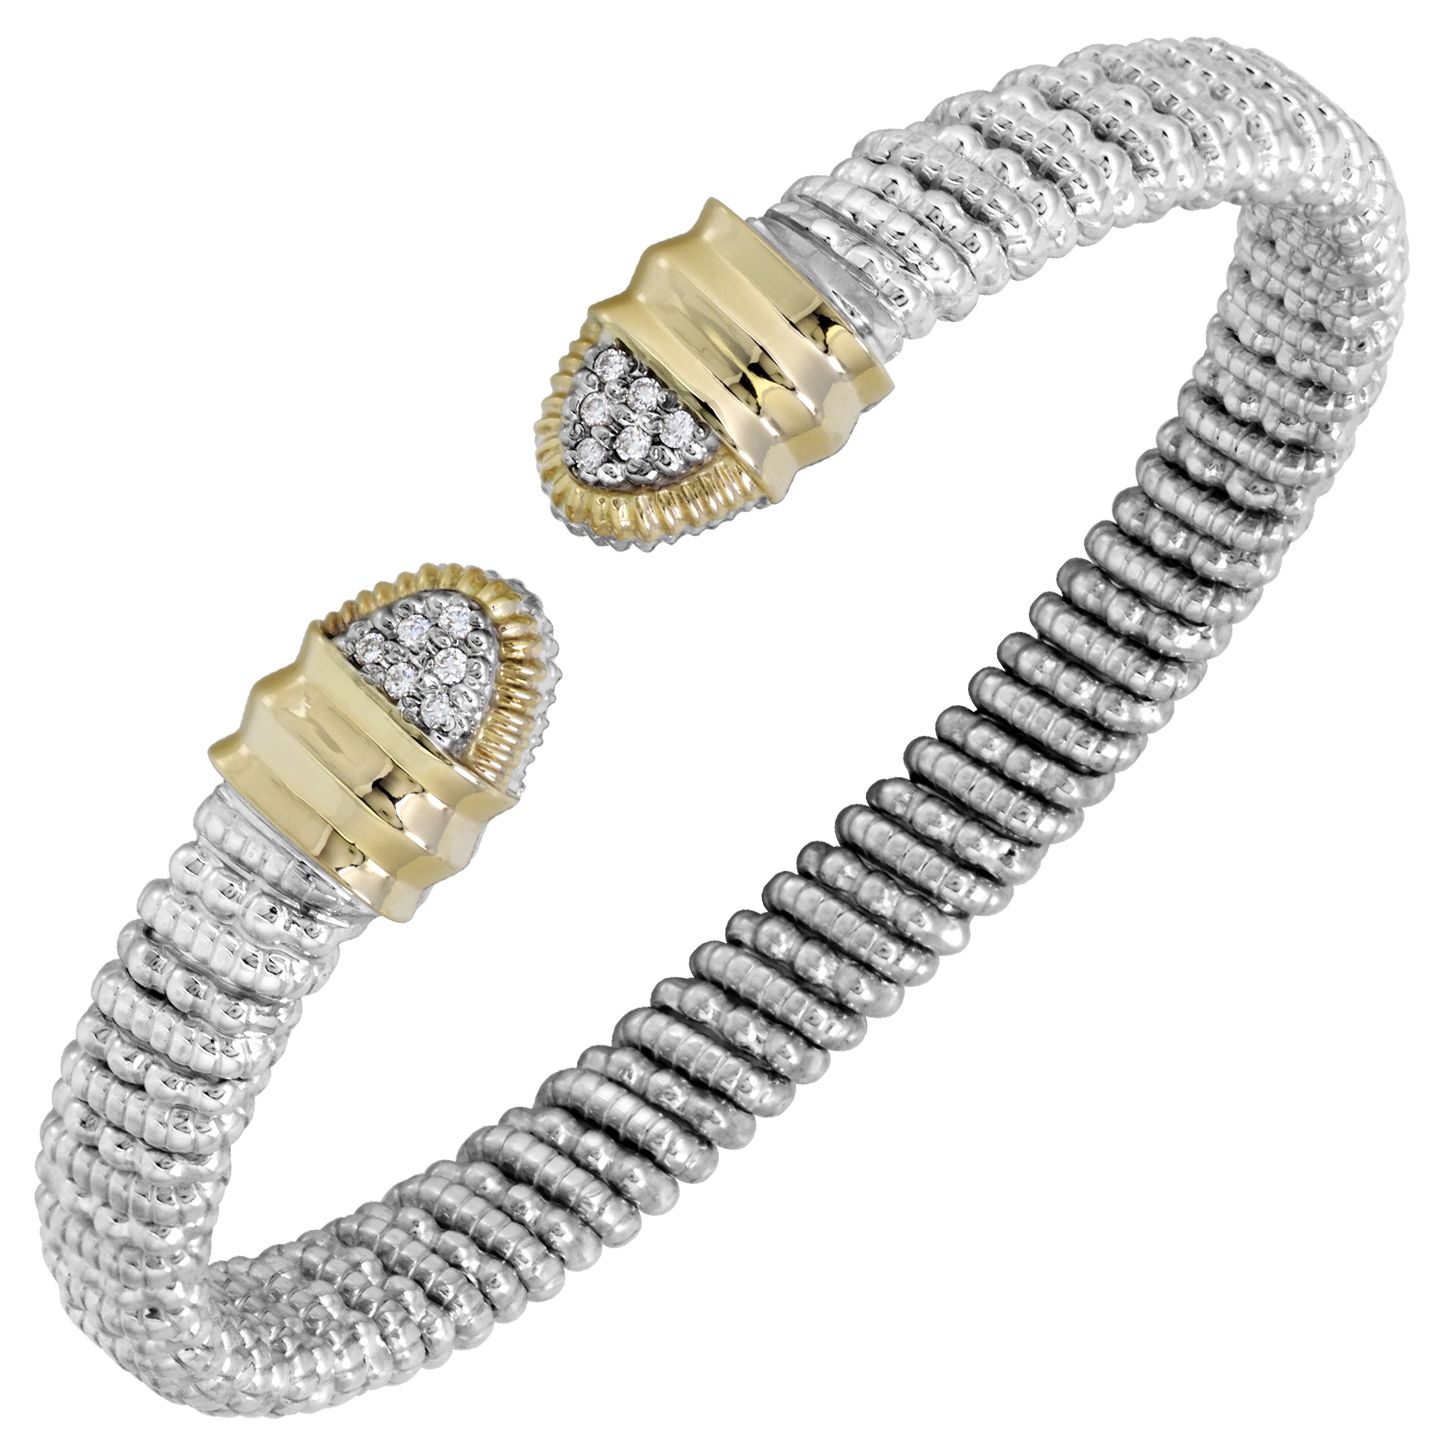 Buy Vahan Bracelets | Sterling Silver & 14K Gold | 0.09cttw Diamonds | 6mm Width | Shop Avonlea Jewelry only at Avonlea Jewelry.